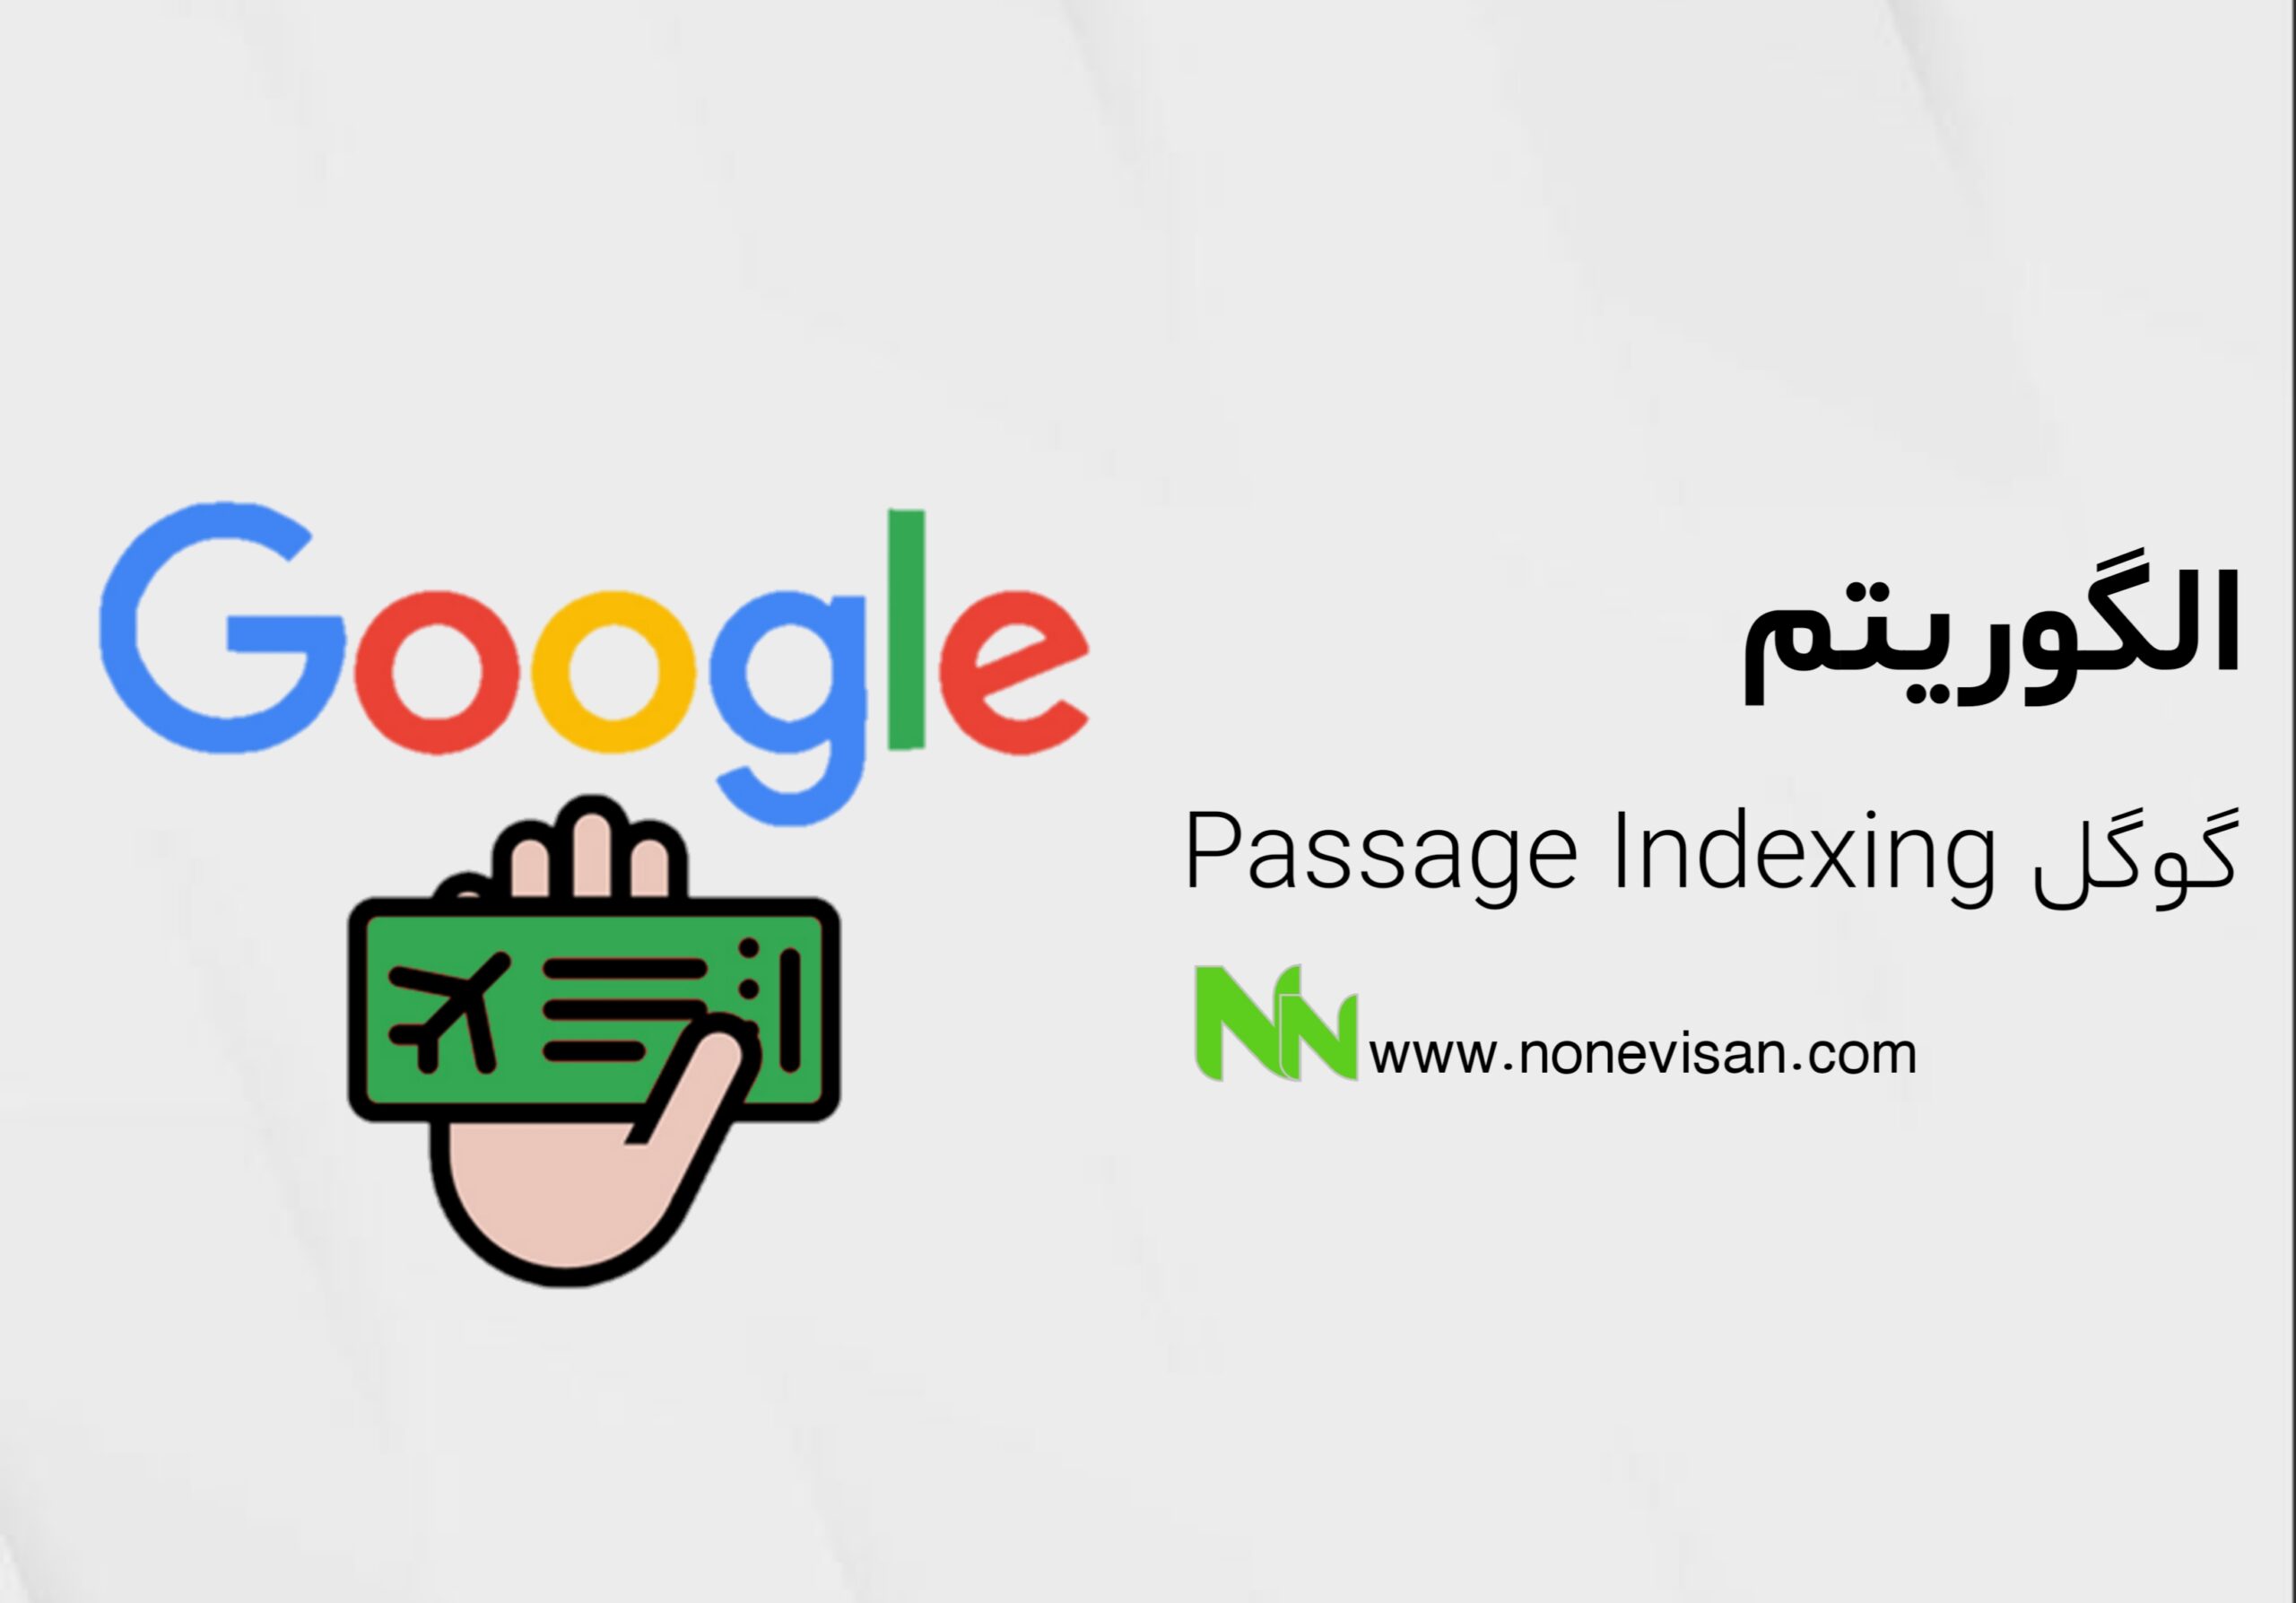 الگوریتم Passage Indexing گوگل​